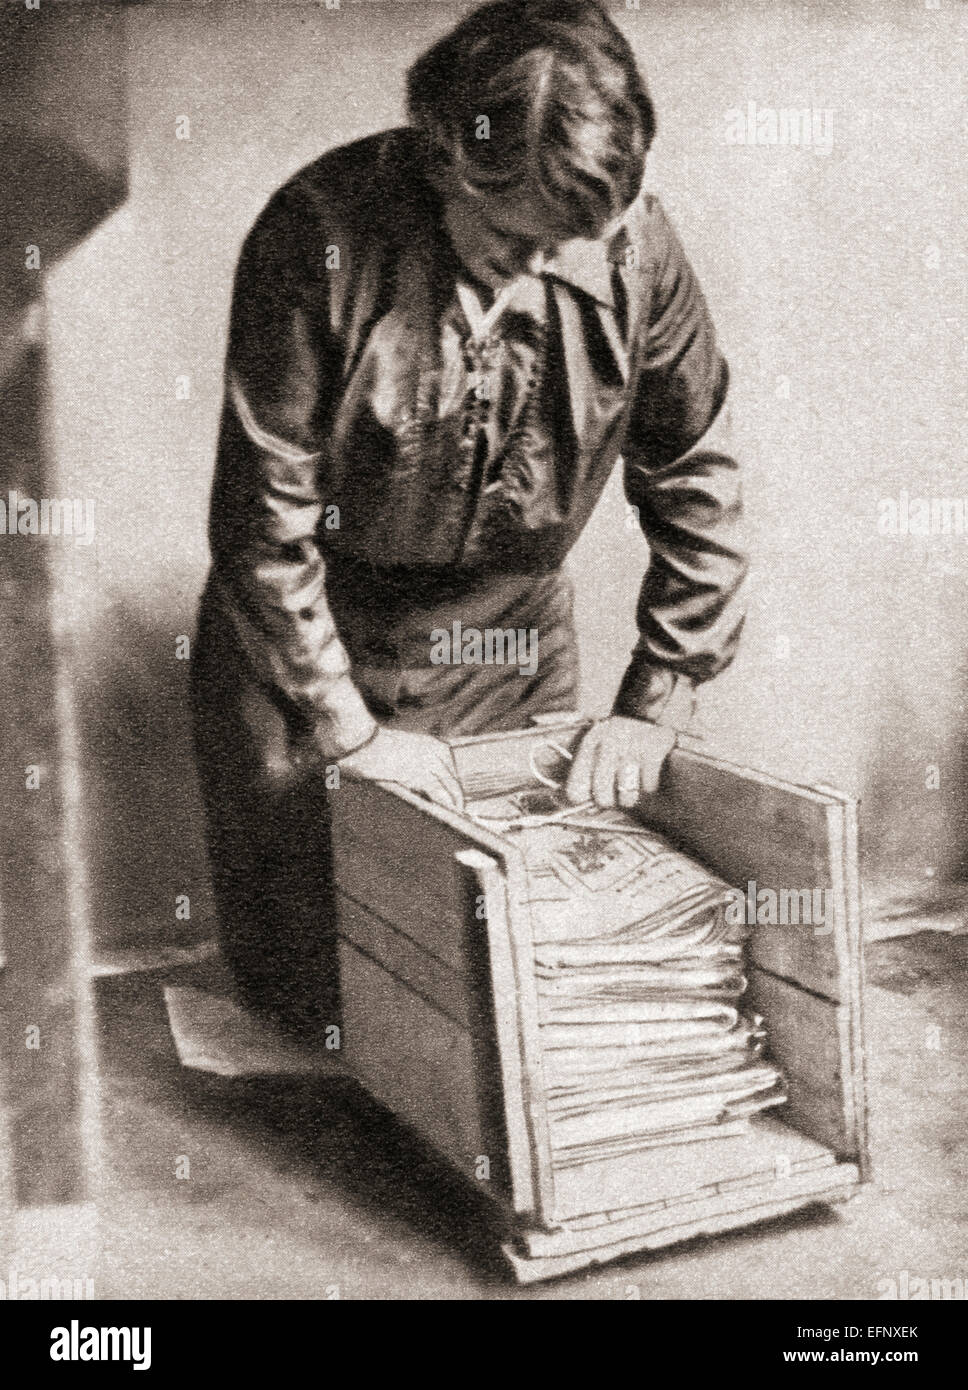 Avec le papier à 9d. la livre, des femmes au foyer de vieux journaux stockées à la revente pour les poissonniers etc pendant la Première Guerre mondiale. Banque D'Images